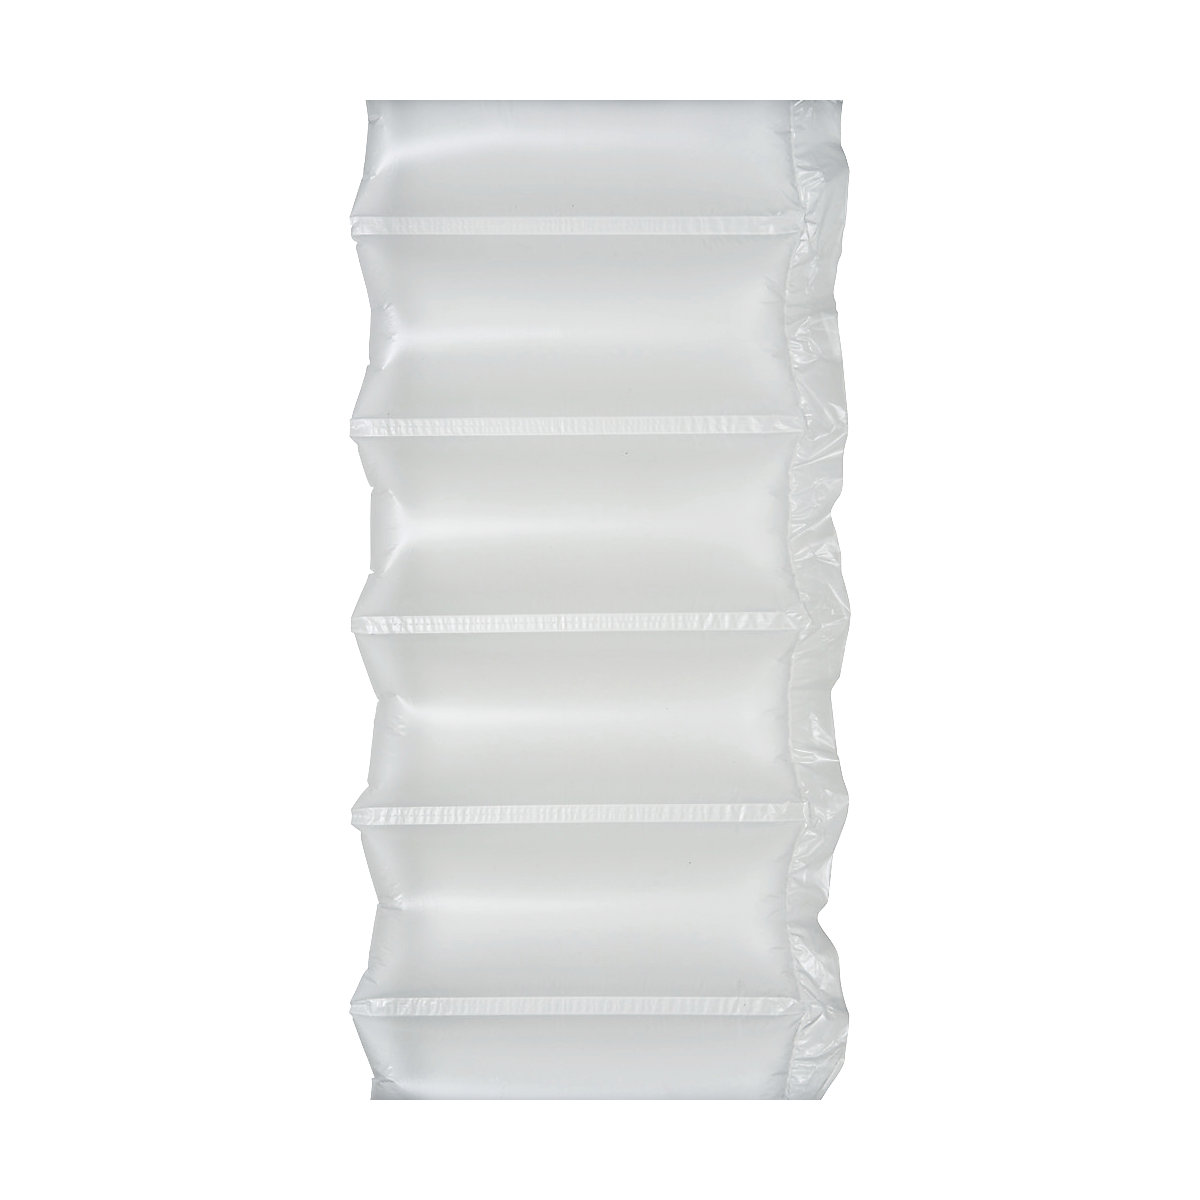 Pellicola per cuscini ad aria AirWave®, pellicola in PE, lunghezza 600 m, largh. x alt. 300 x 130 mm, a partire da 10 pz.-1